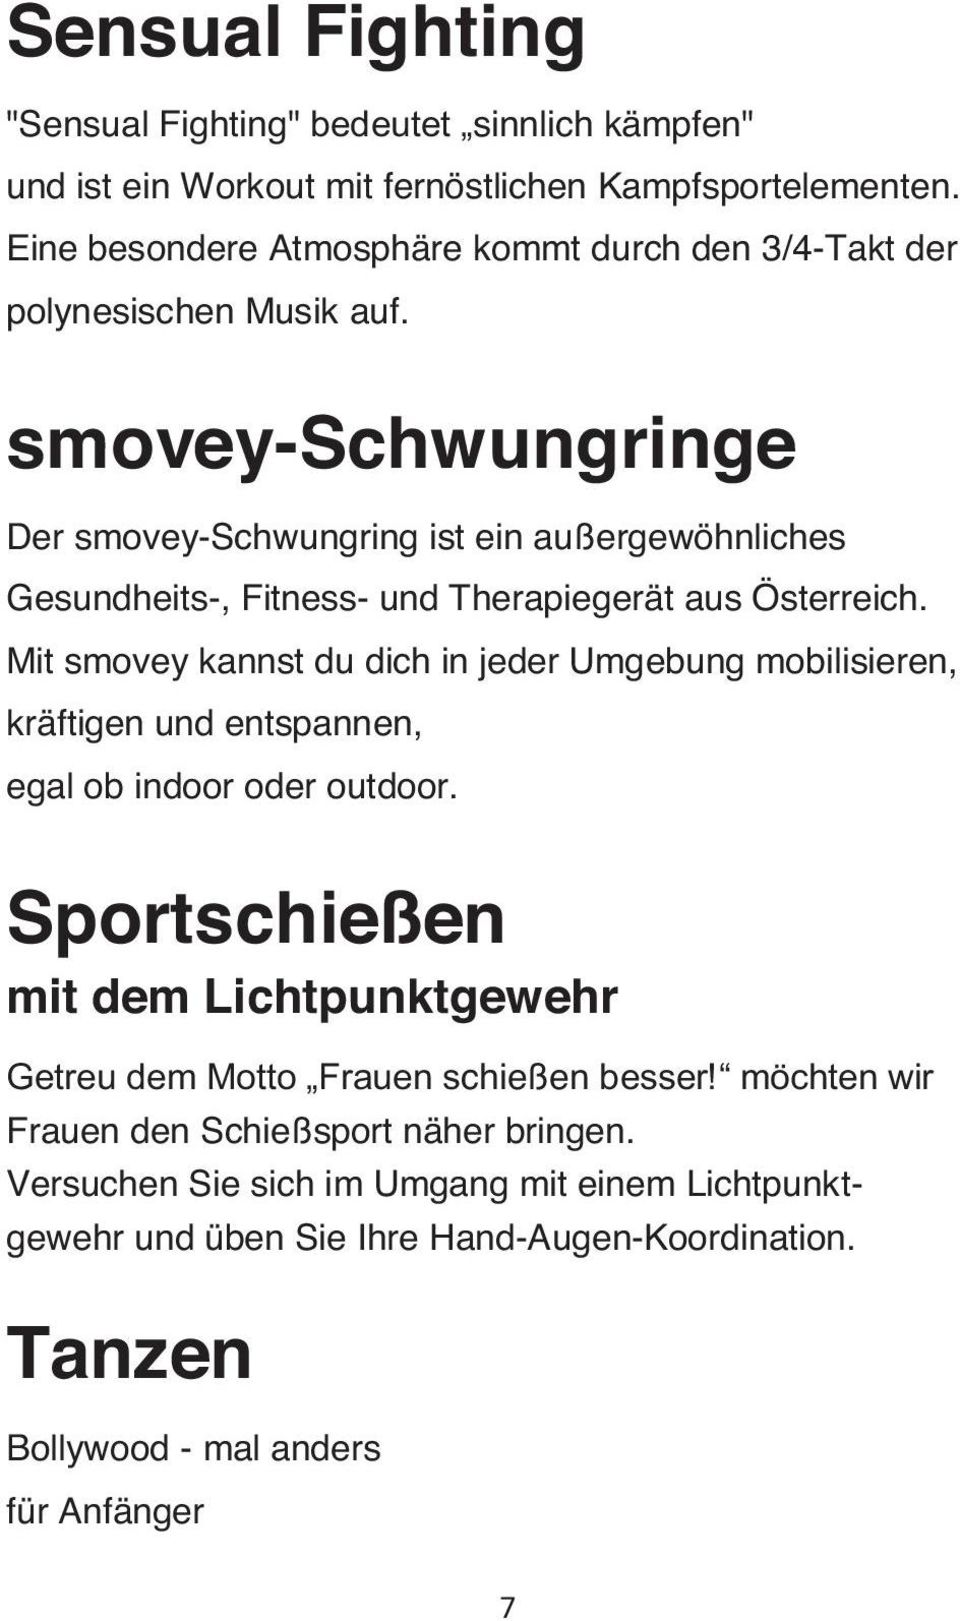 smovey-schwungringe Der smovey-schwungring ist ein außergewöhnliches Gesundheits-, Fitness- und Therapiegerät aus Österreich.